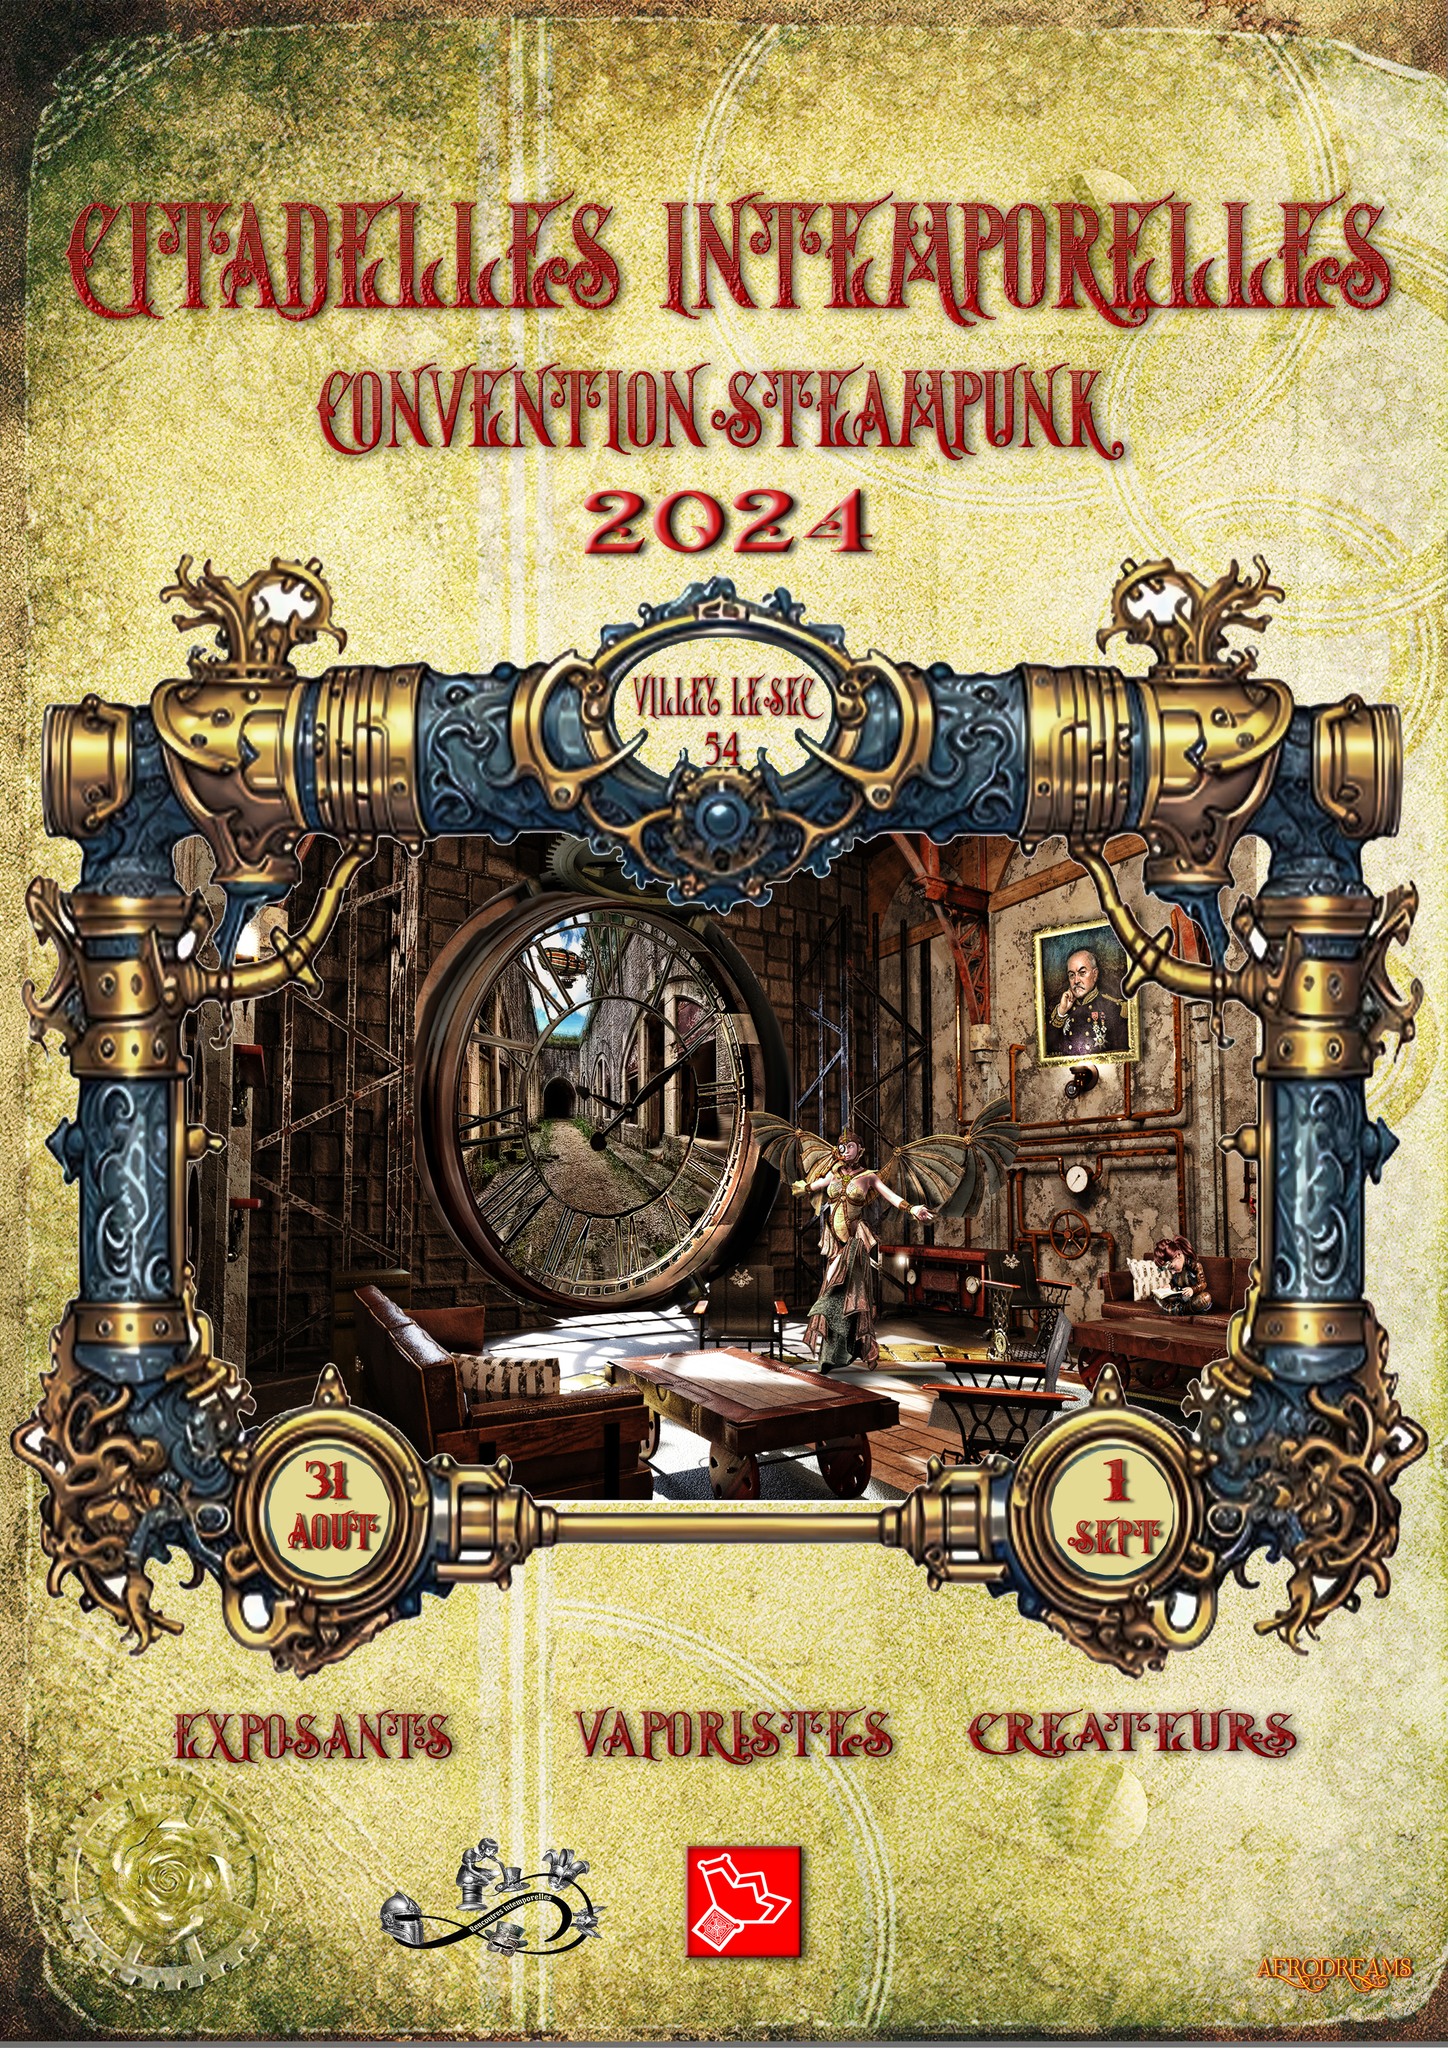 Citedelles intemporelles convention steampunk 31 aout et 1er septembre 2024 fort de volley le sec 54 la manufacture de Lady S